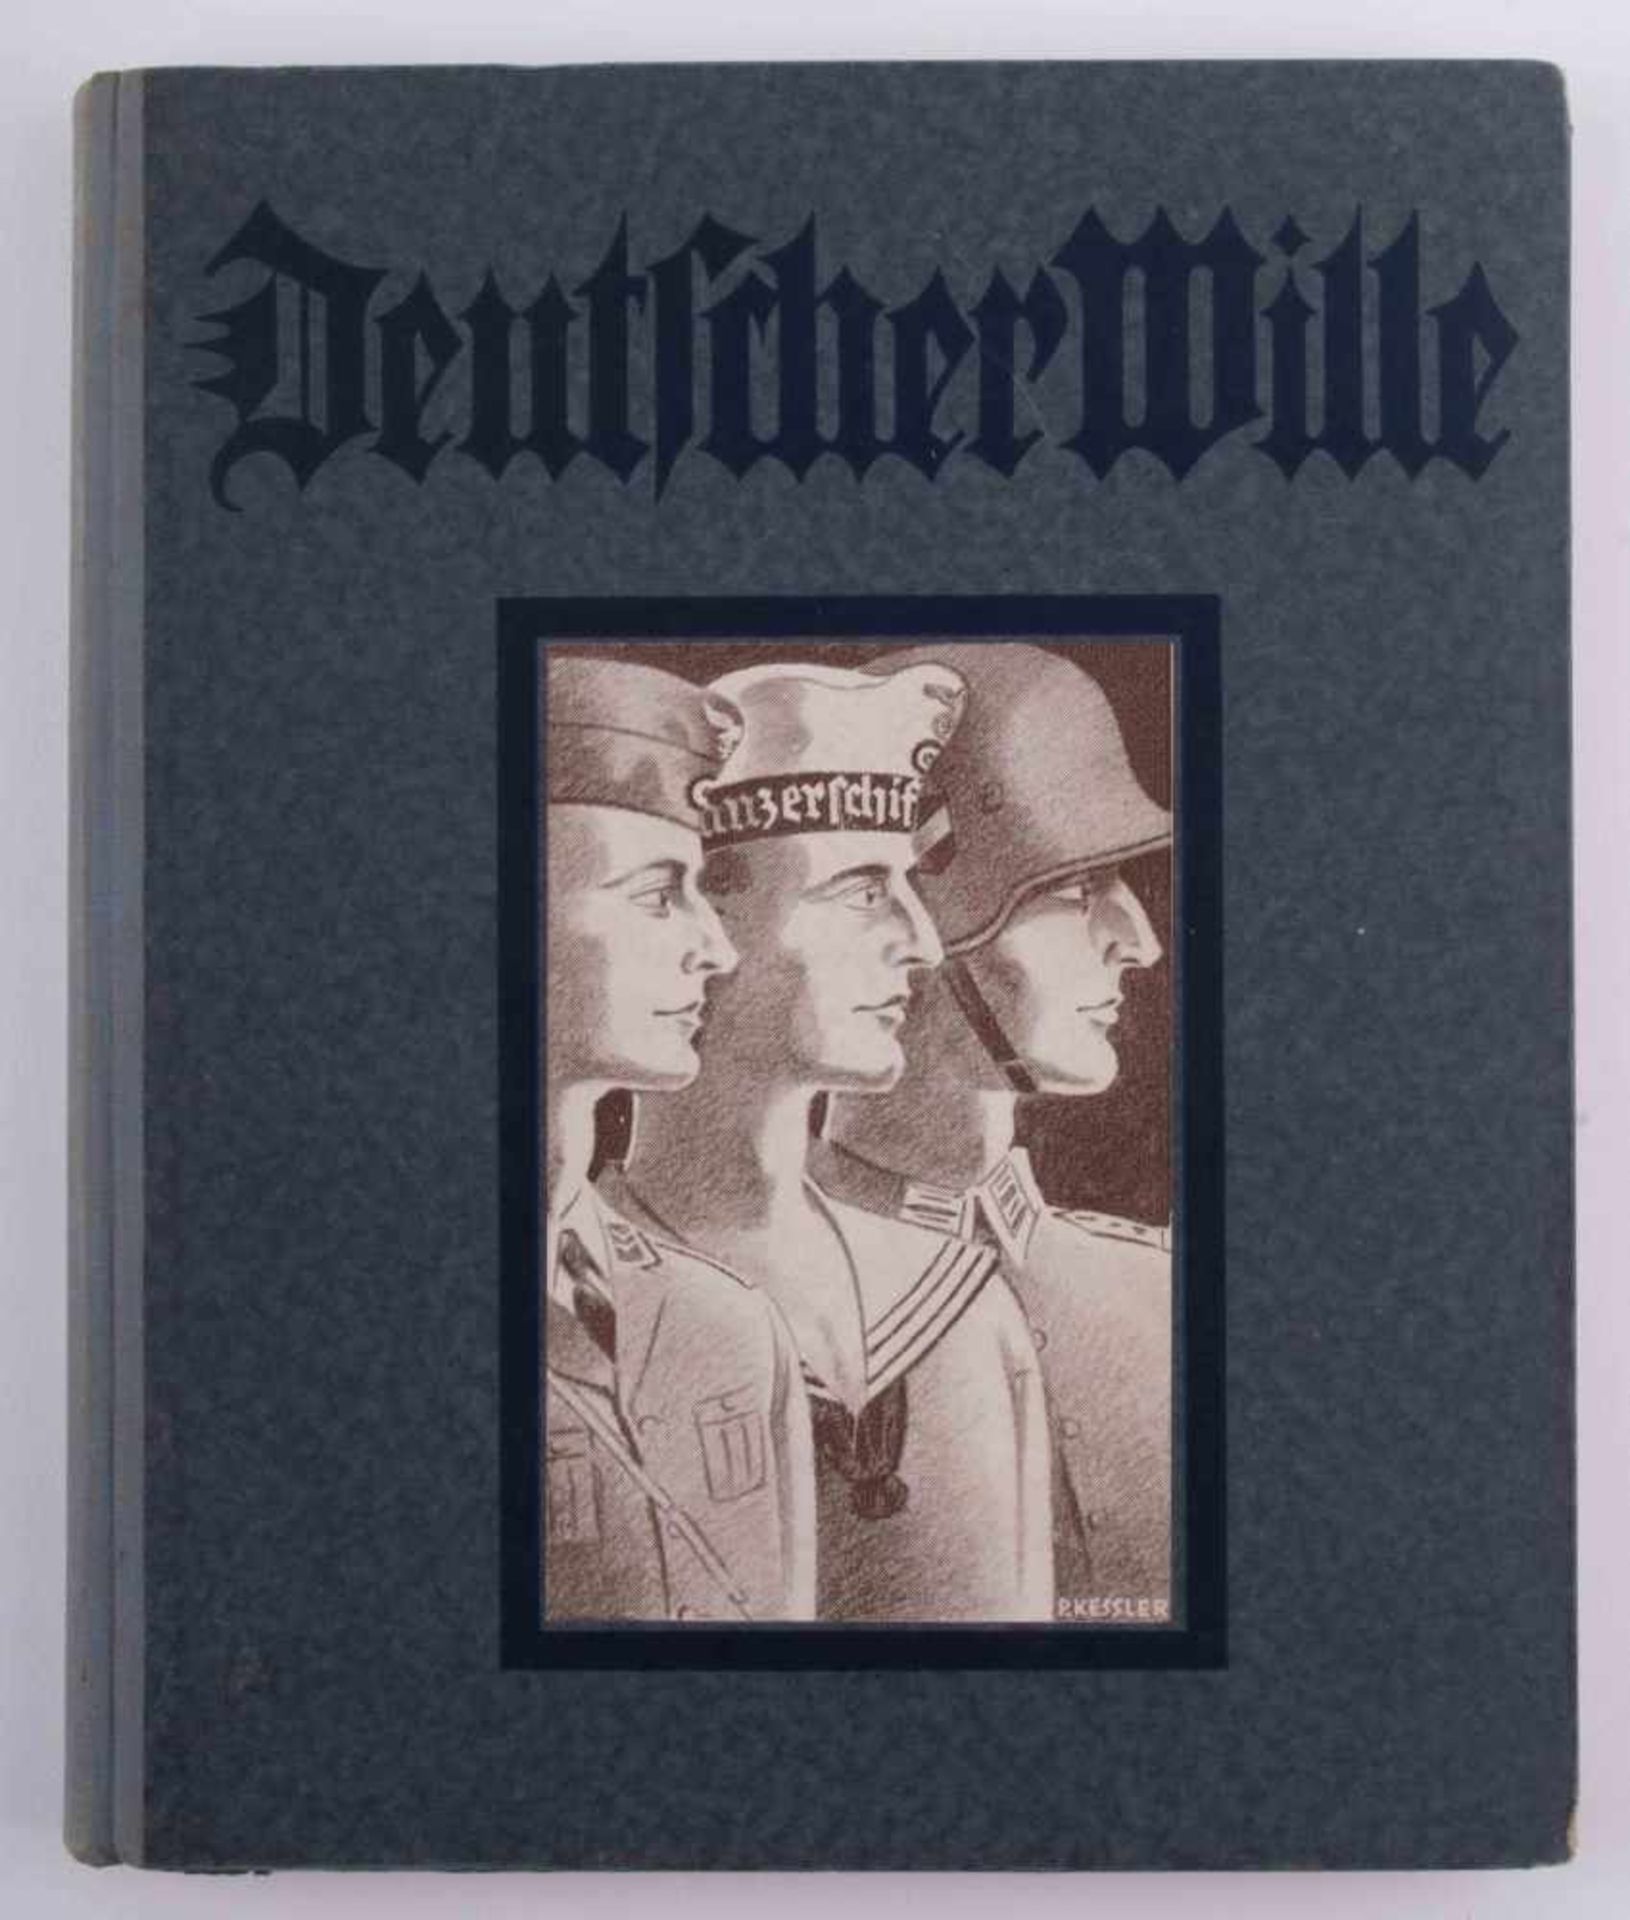 Deutscher Wille.,Jahrbuch 1936. Birkenwerder bei Berlin: Verlag Deutscher Wille. 1936 25 cm x 21 cm. - Bild 2 aus 2